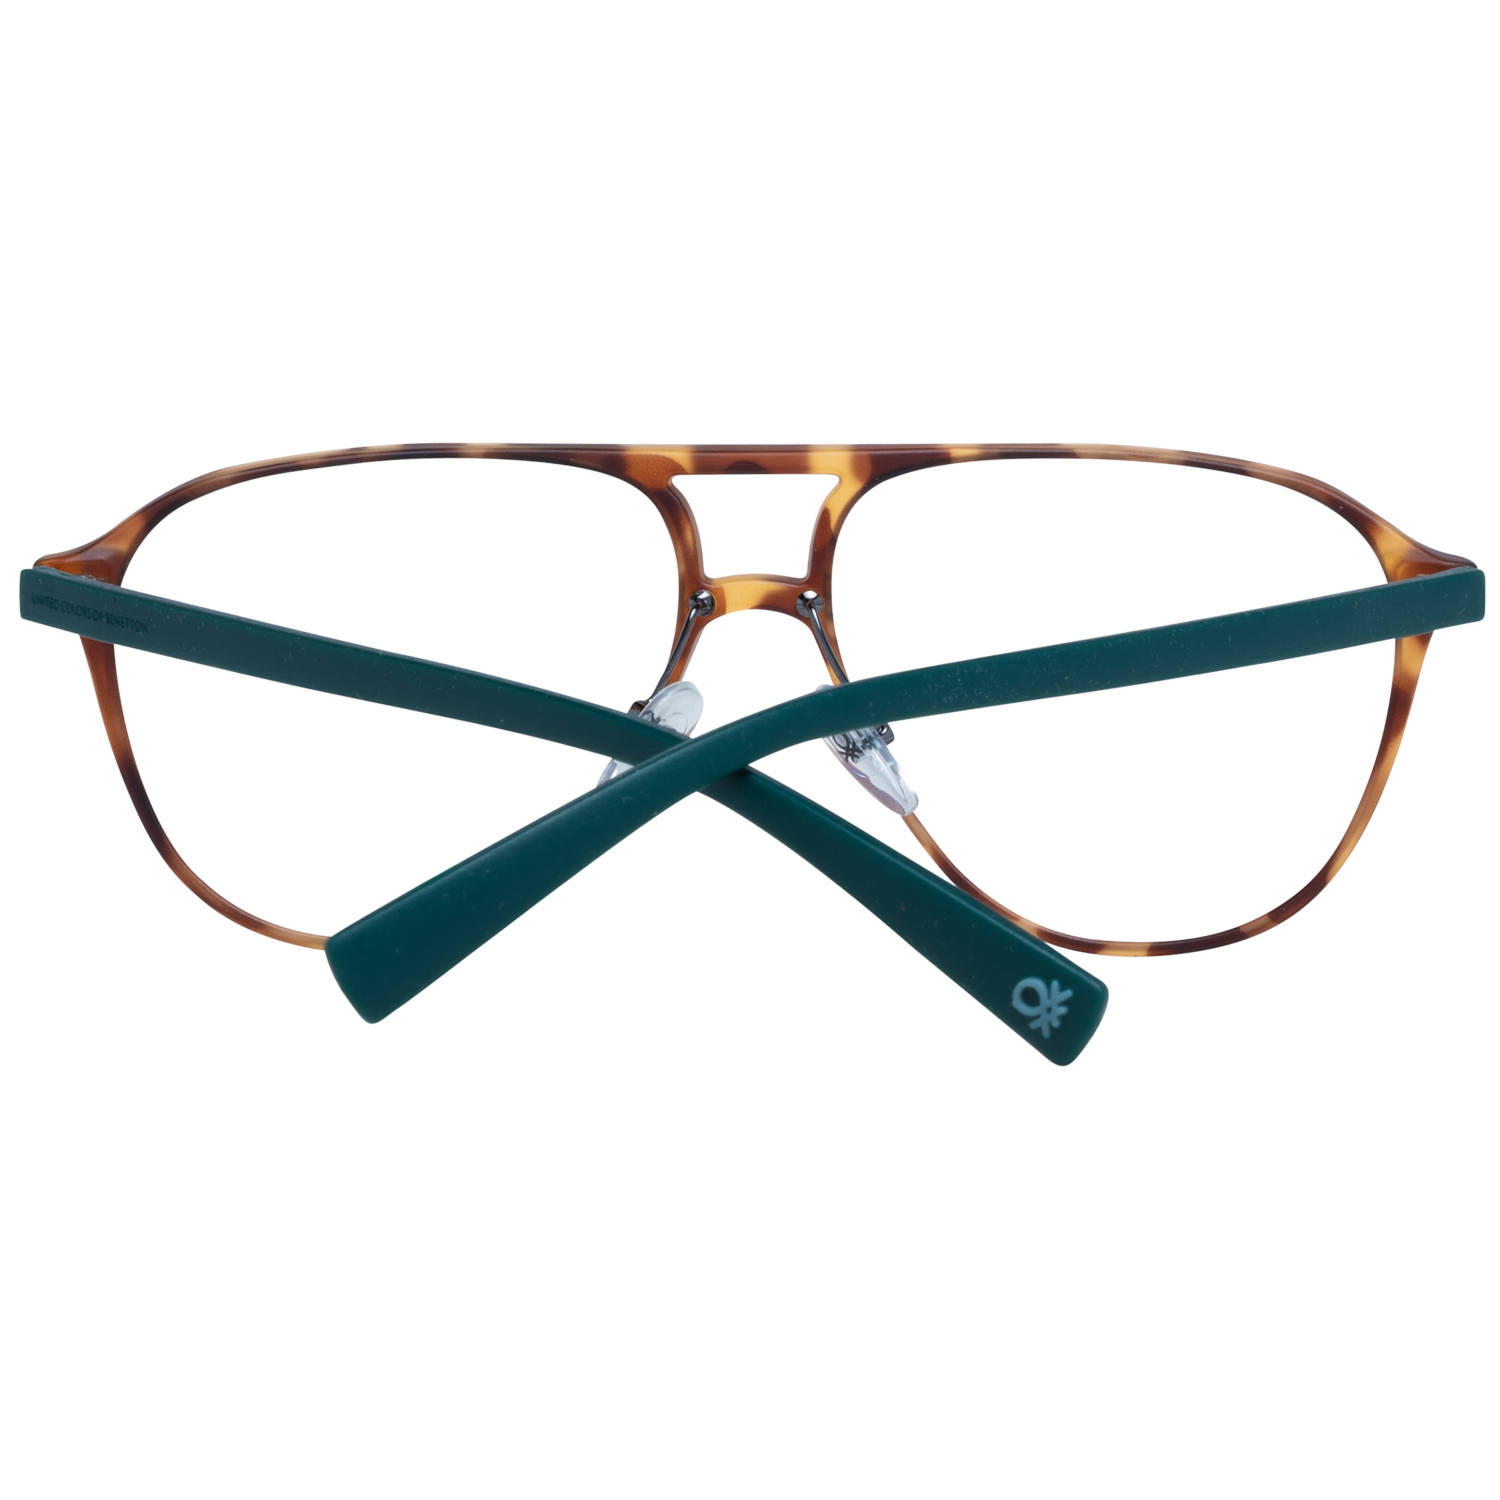 Benetton Frames Benetton Glasses Frames BEO1008 112 56 Eyeglasses Eyewear UK USA Australia 